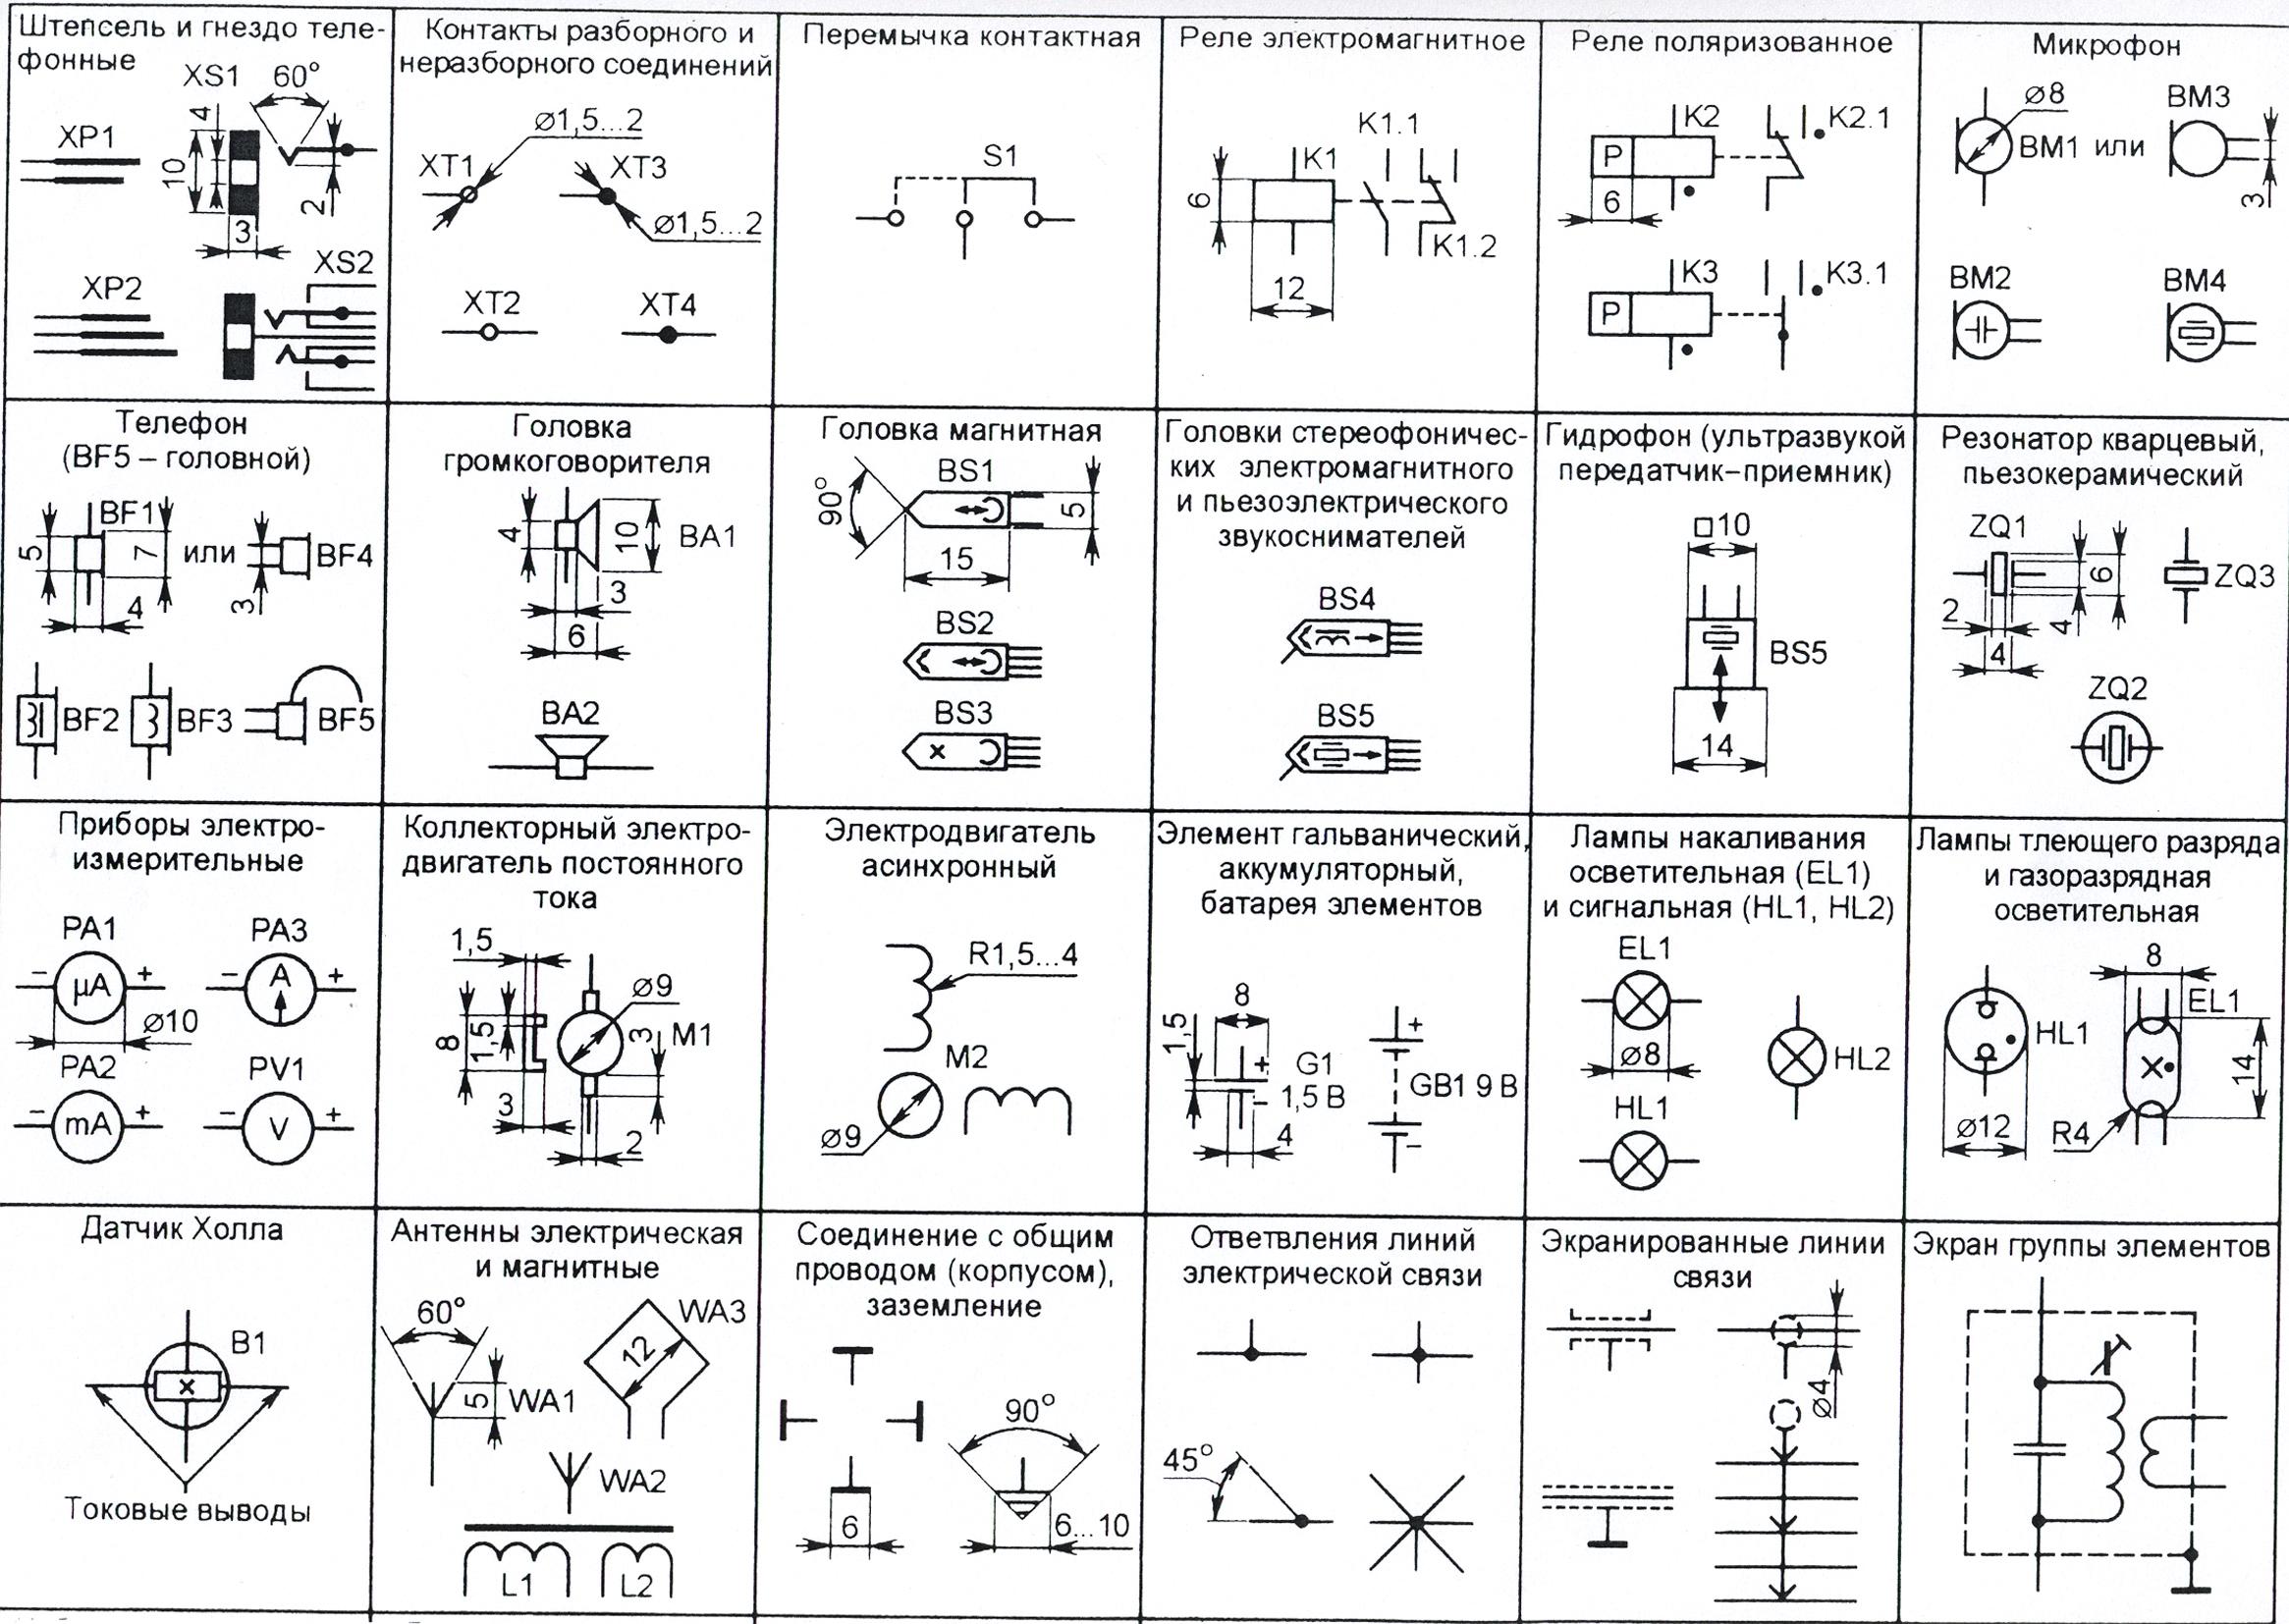 Ru обозначение на схеме. ГОСТОВСКИЕ обозначения элементов электрических схем. Обозначение клеммы на схеме электрической принципиальной. Условные графические обозначения разъемов в принципиальных схемах. Обозначение элементов на схеме подстанции.